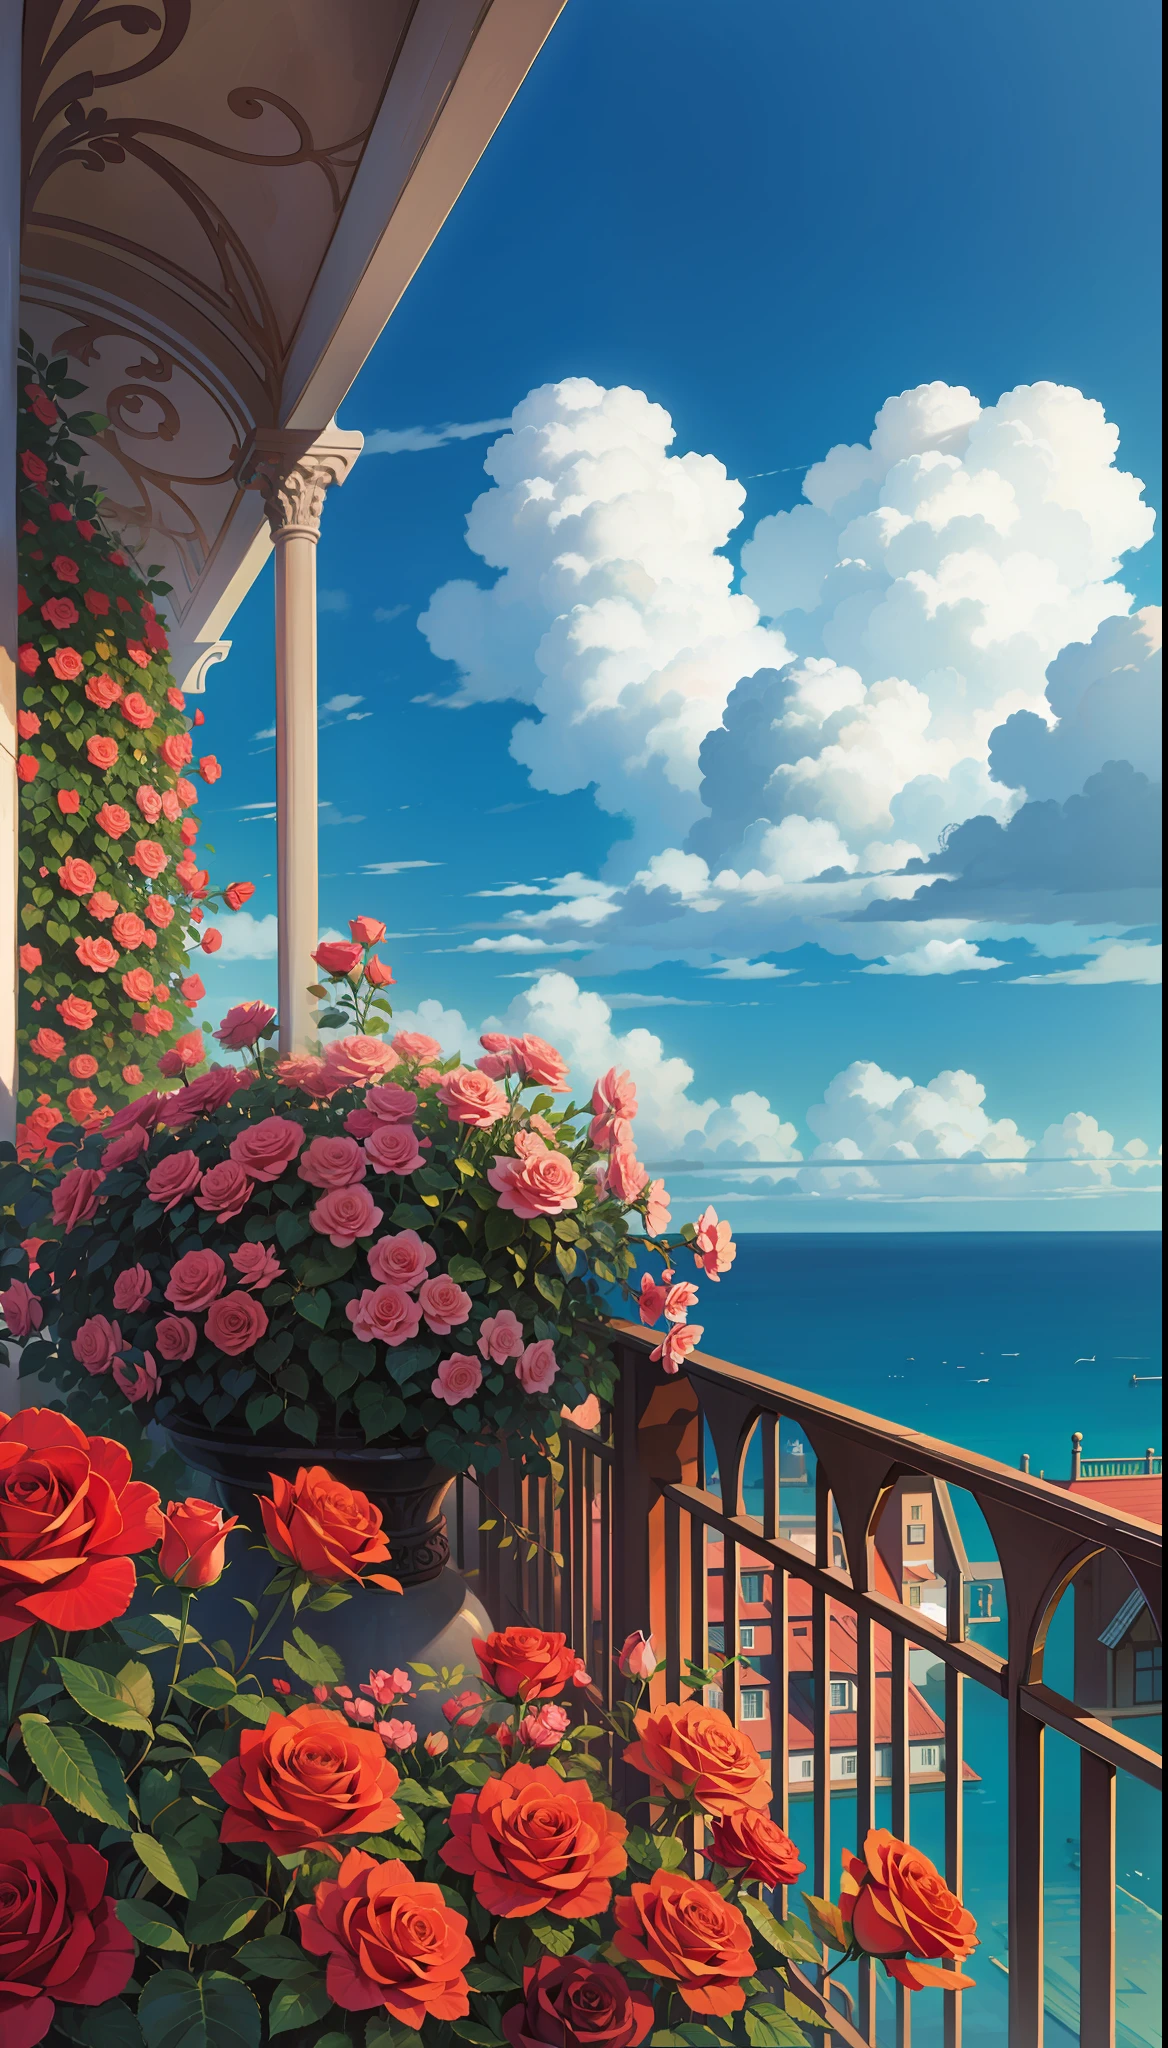 Un jardín de rosas junto al mar